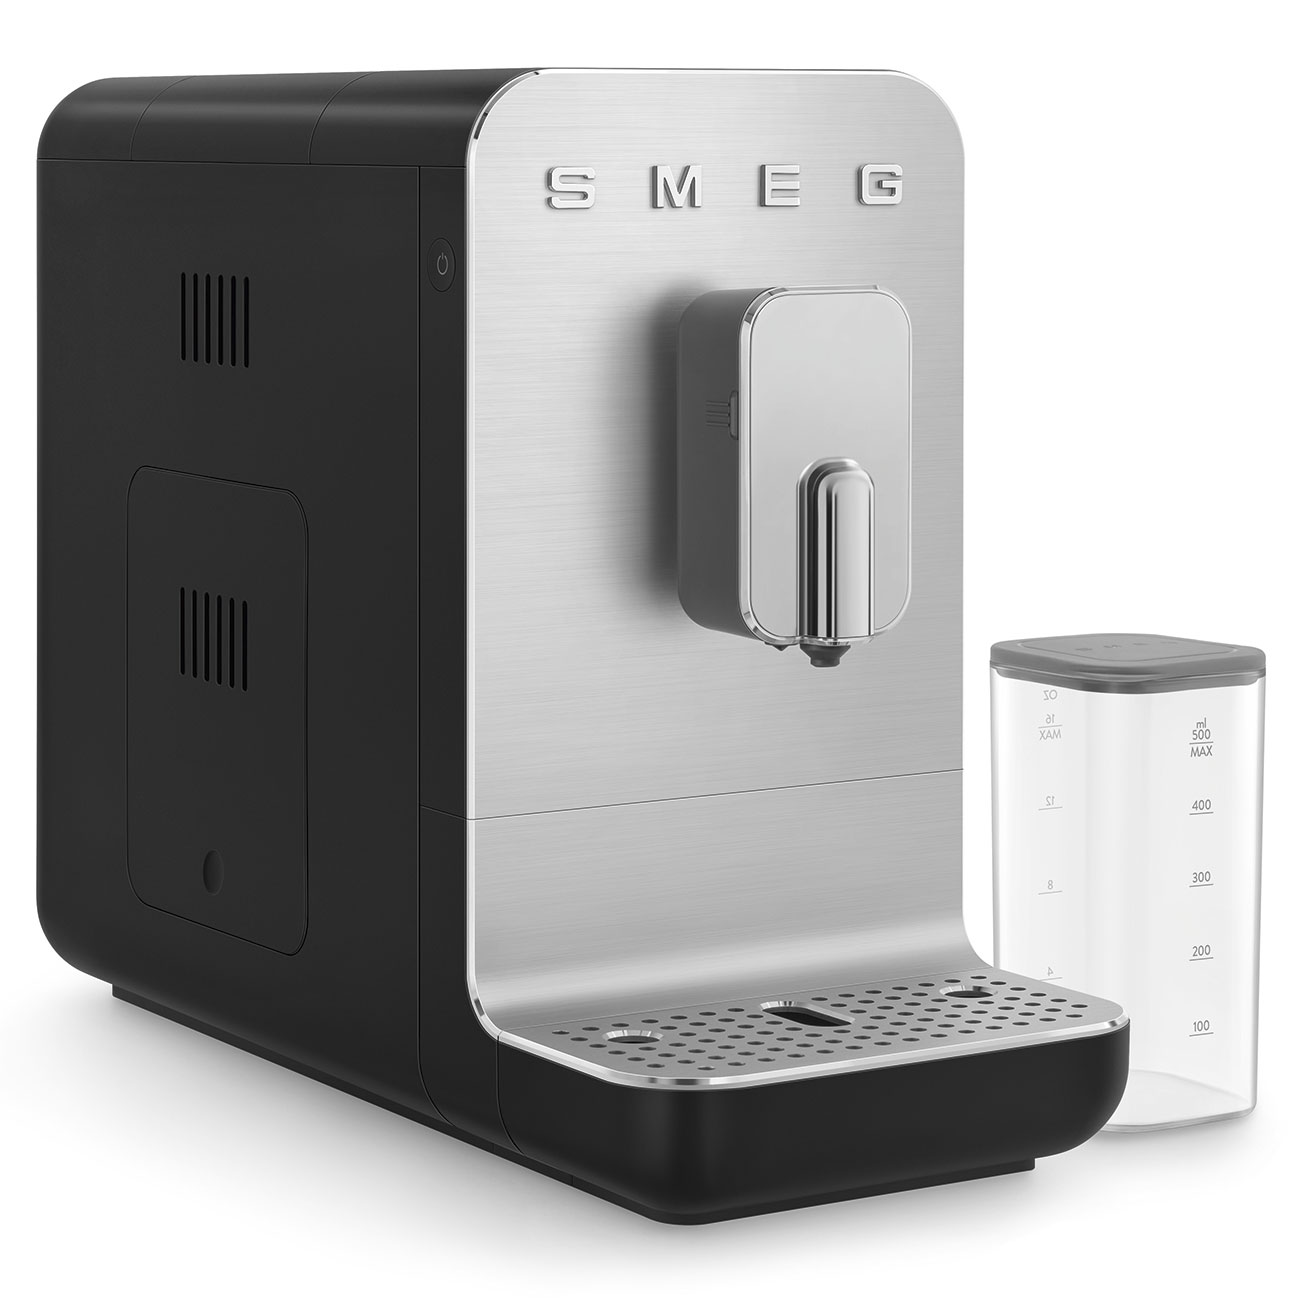 SMEG Schwarz Kaffeevollautomat mit Milchfunktion_3